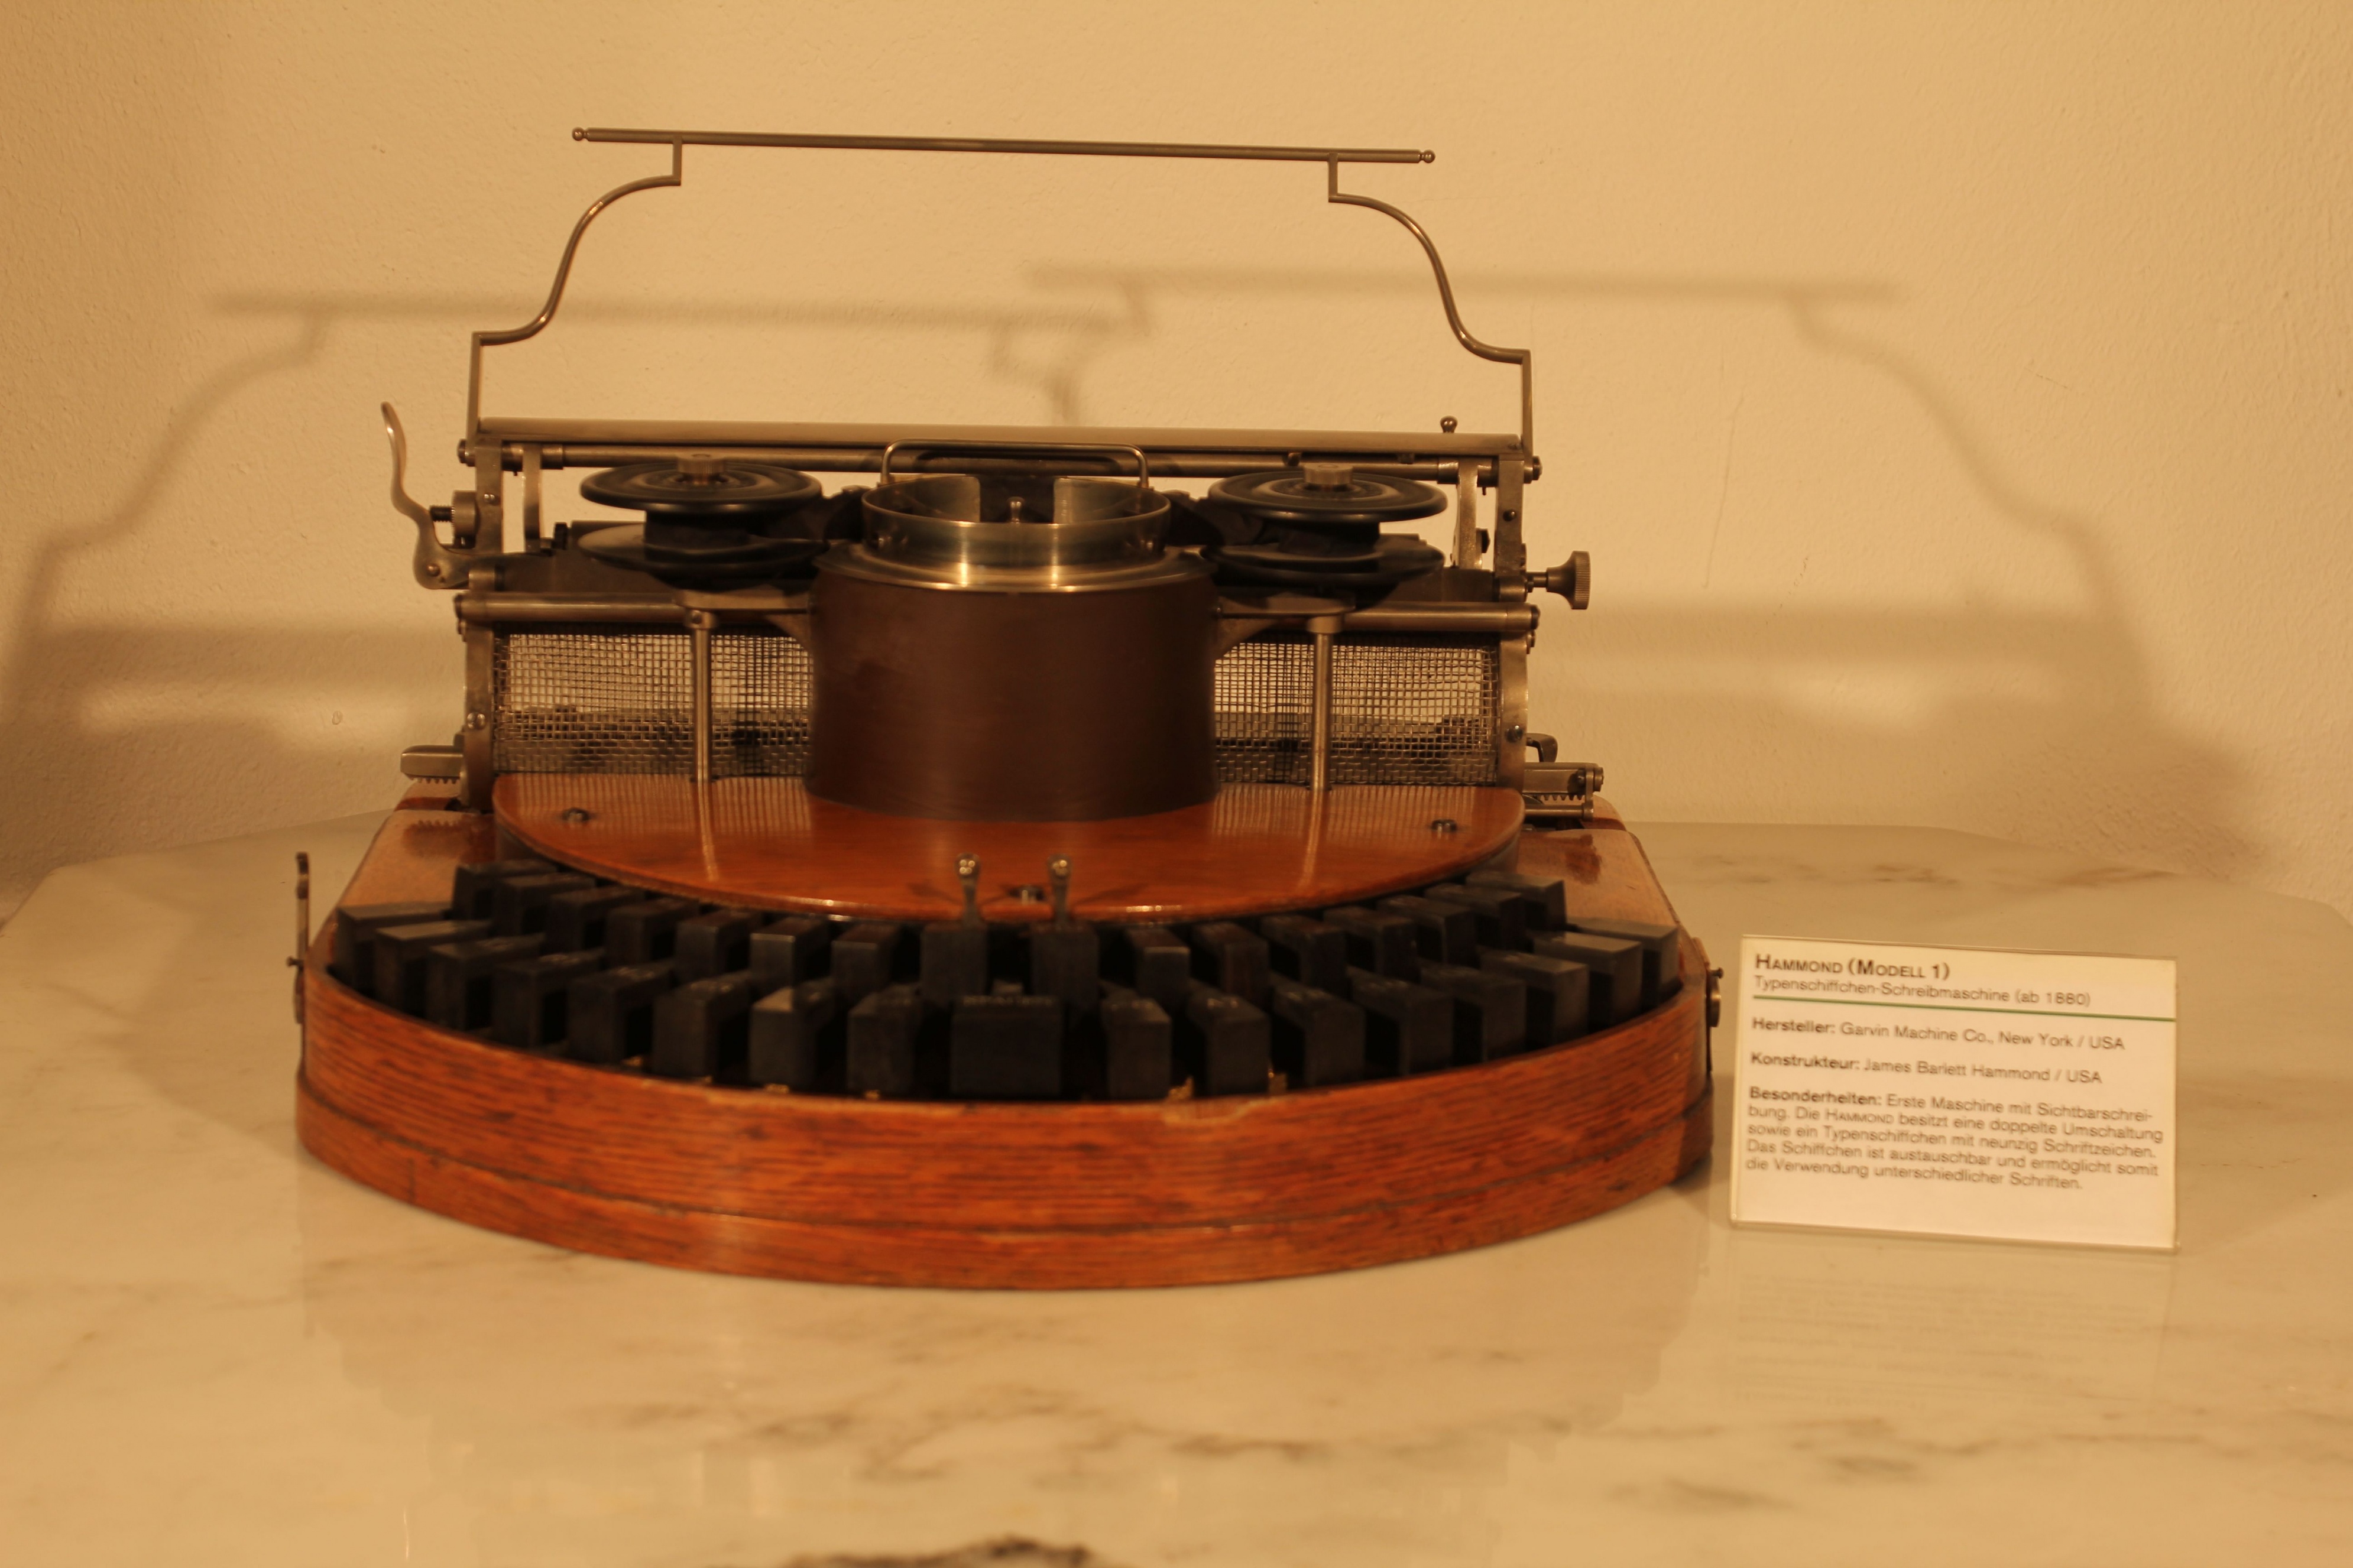 Schreibmaschine Hammond Ideal Modell 1 (Stiftung Deutsches Technikmuseum Berlin CC0)